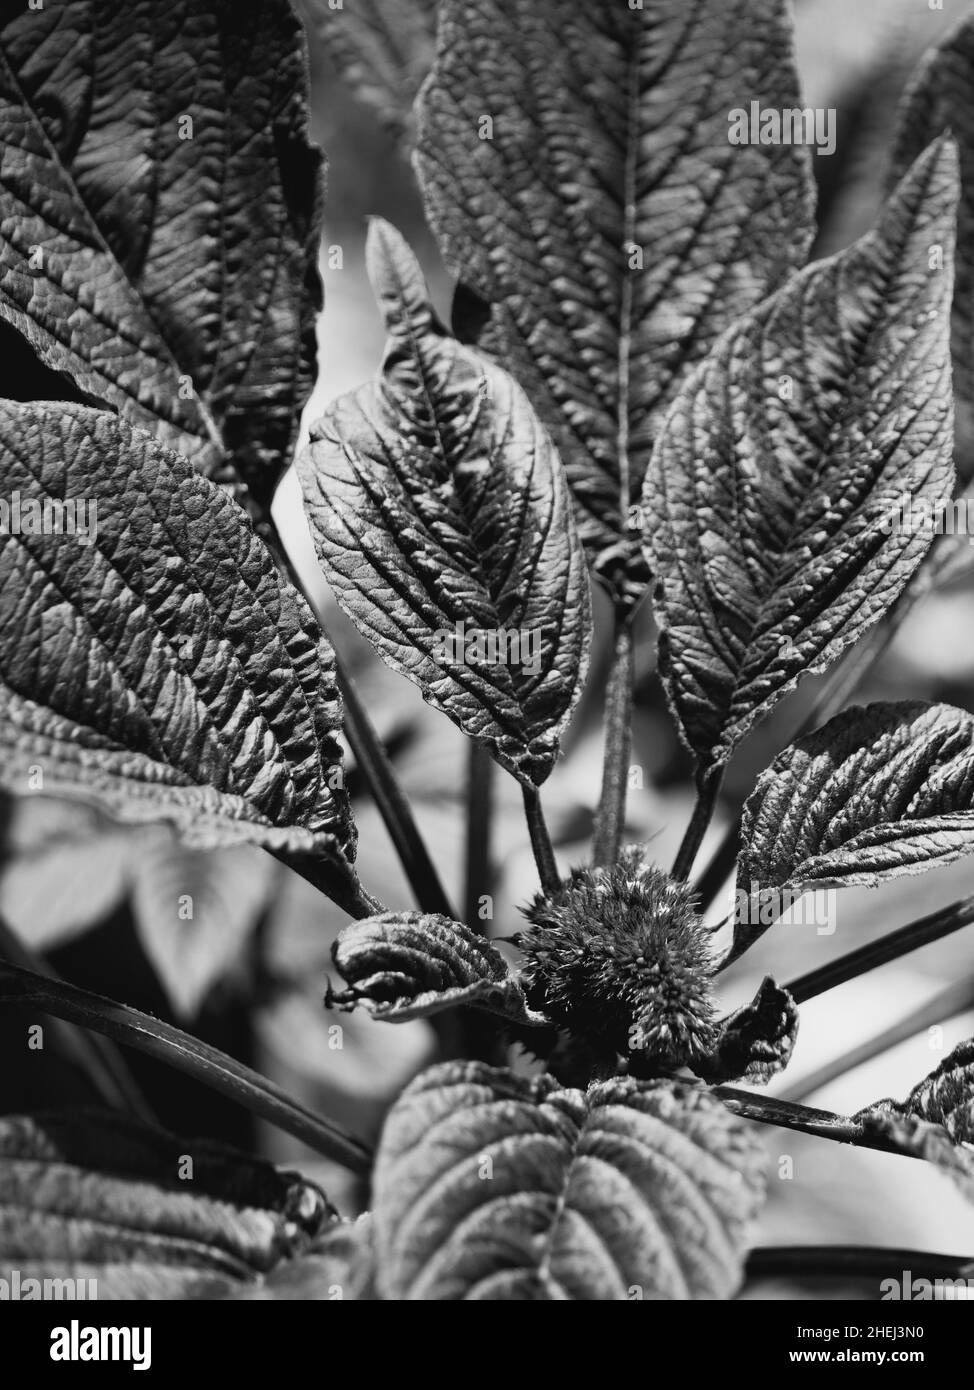 Amaranth Blume und Blätter, Nahaufnahme. Amaranth jede Pflanze der Gattung Amaranthus, die in der Regel kleine grüne, rote oder lila gefärbte Blüten hat. Schwarz A Stockfoto